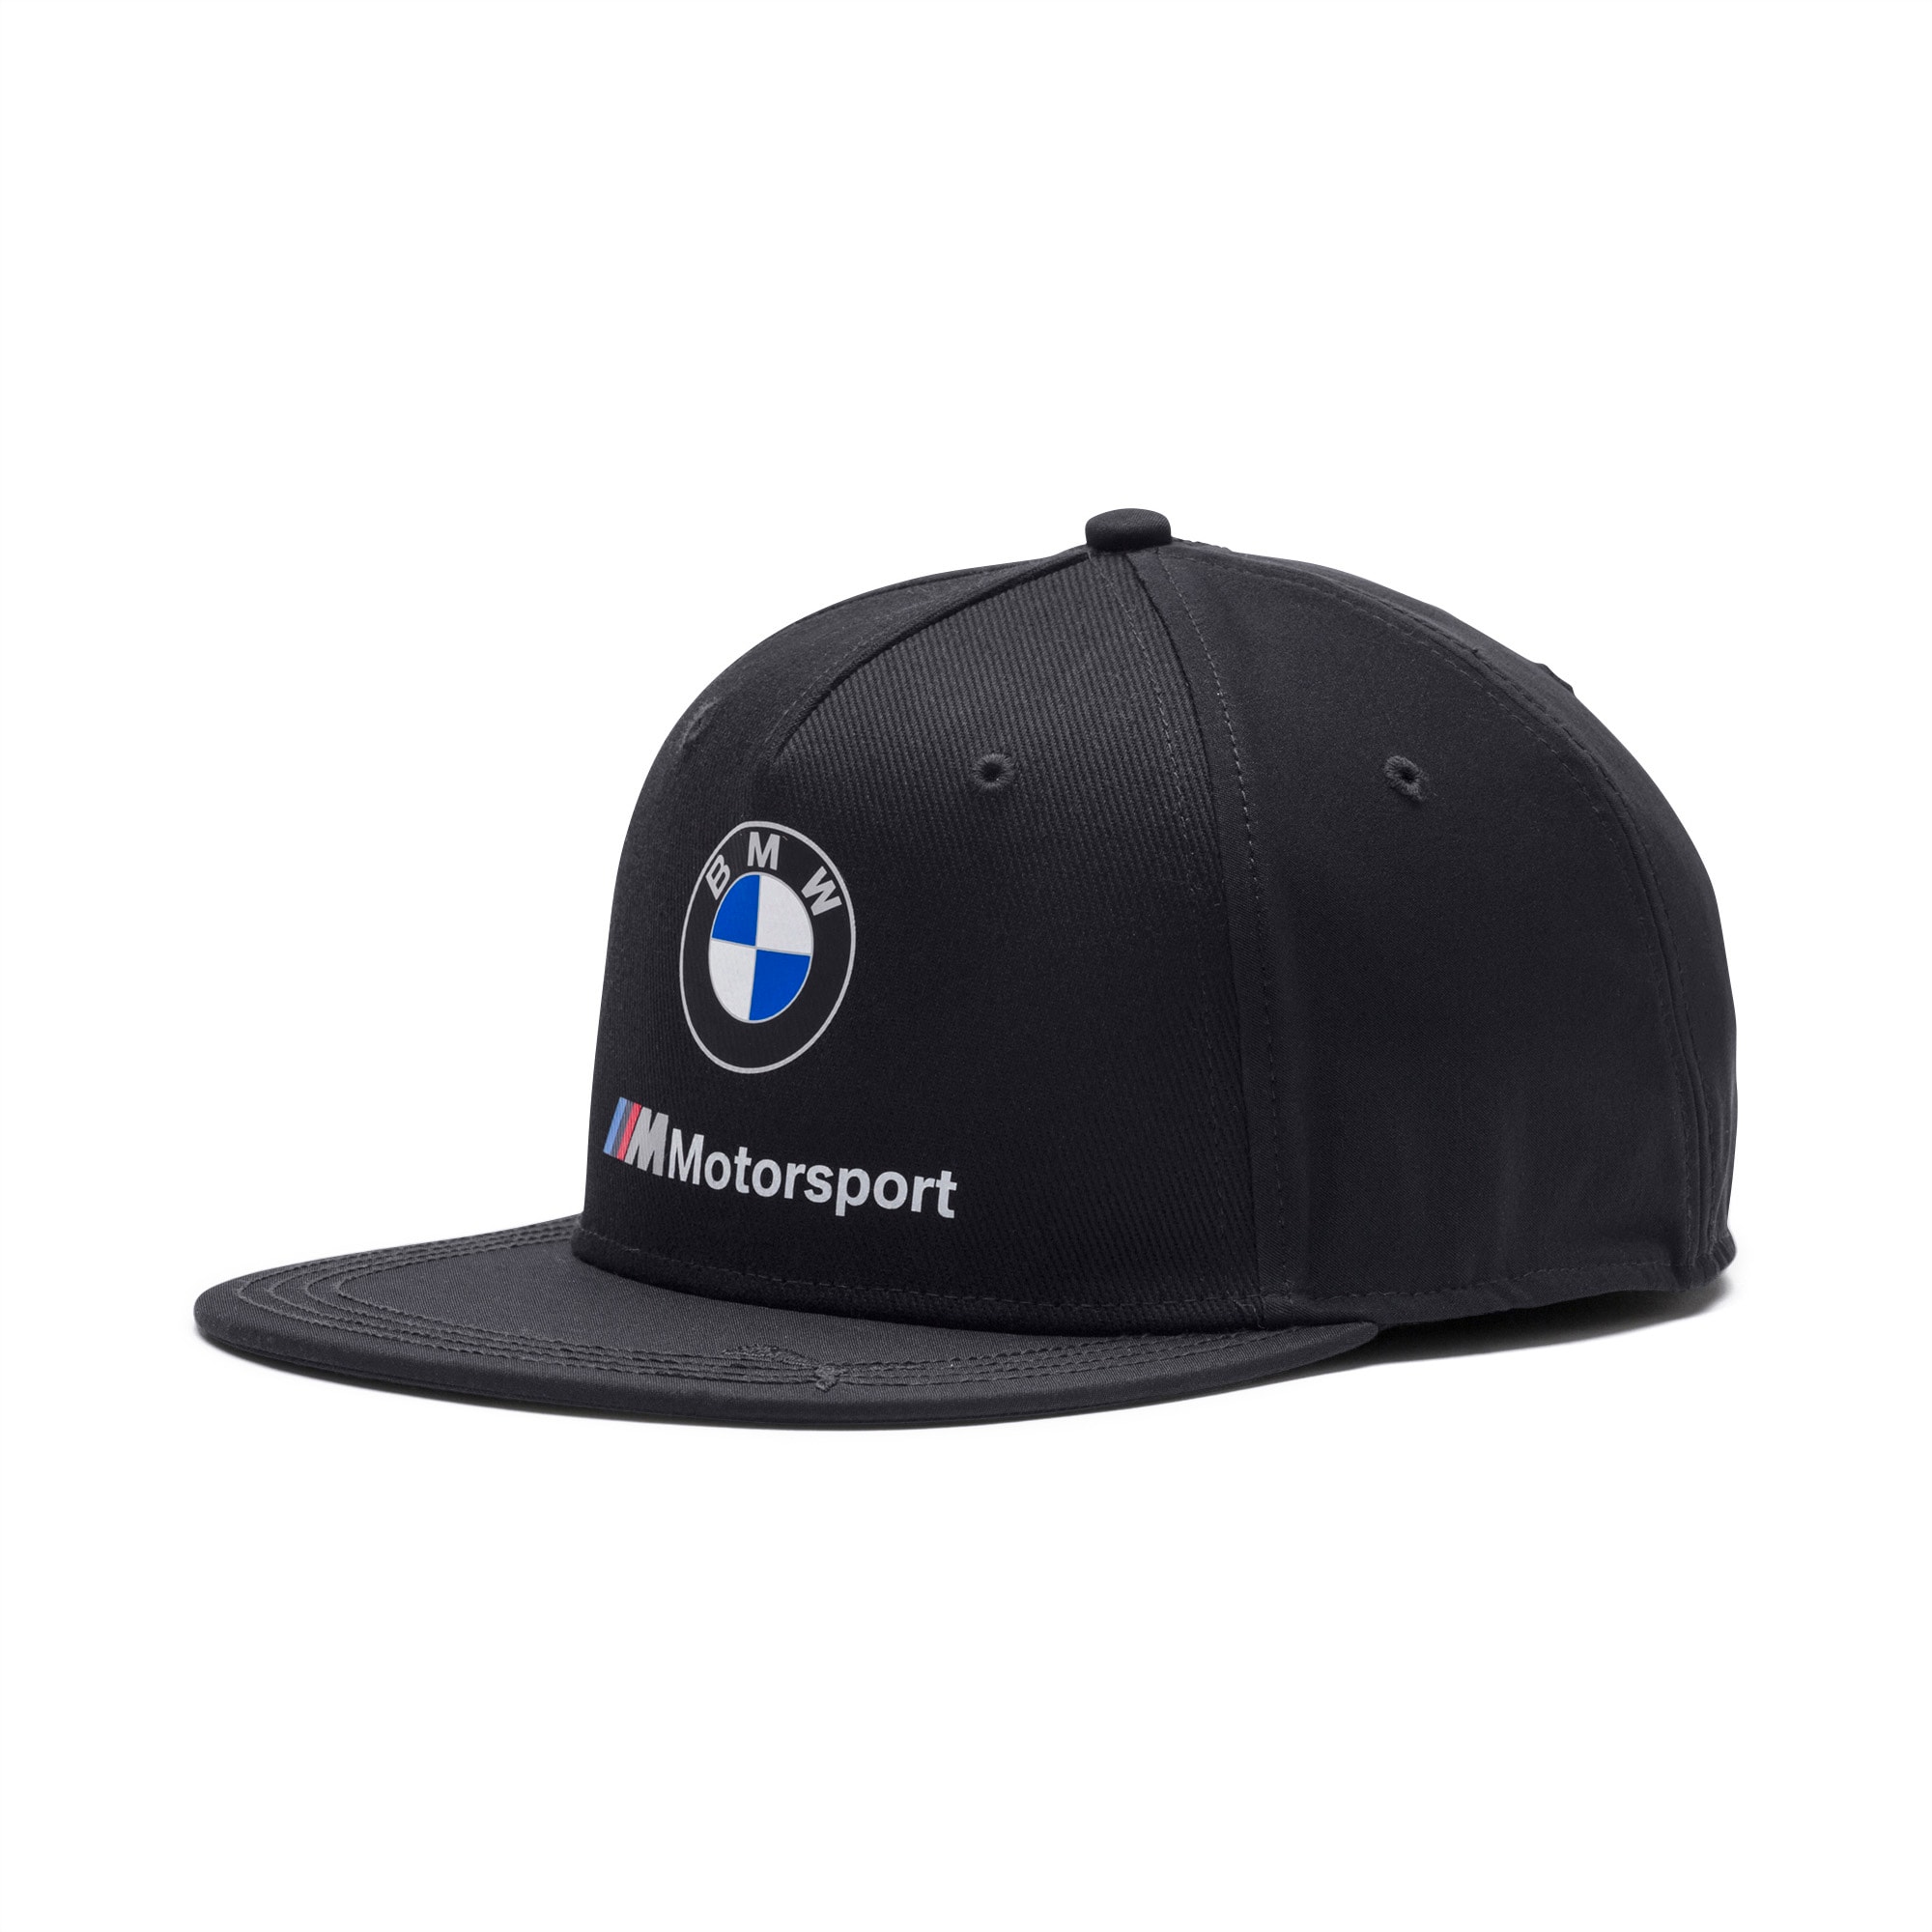 bmw motorsport puma hat